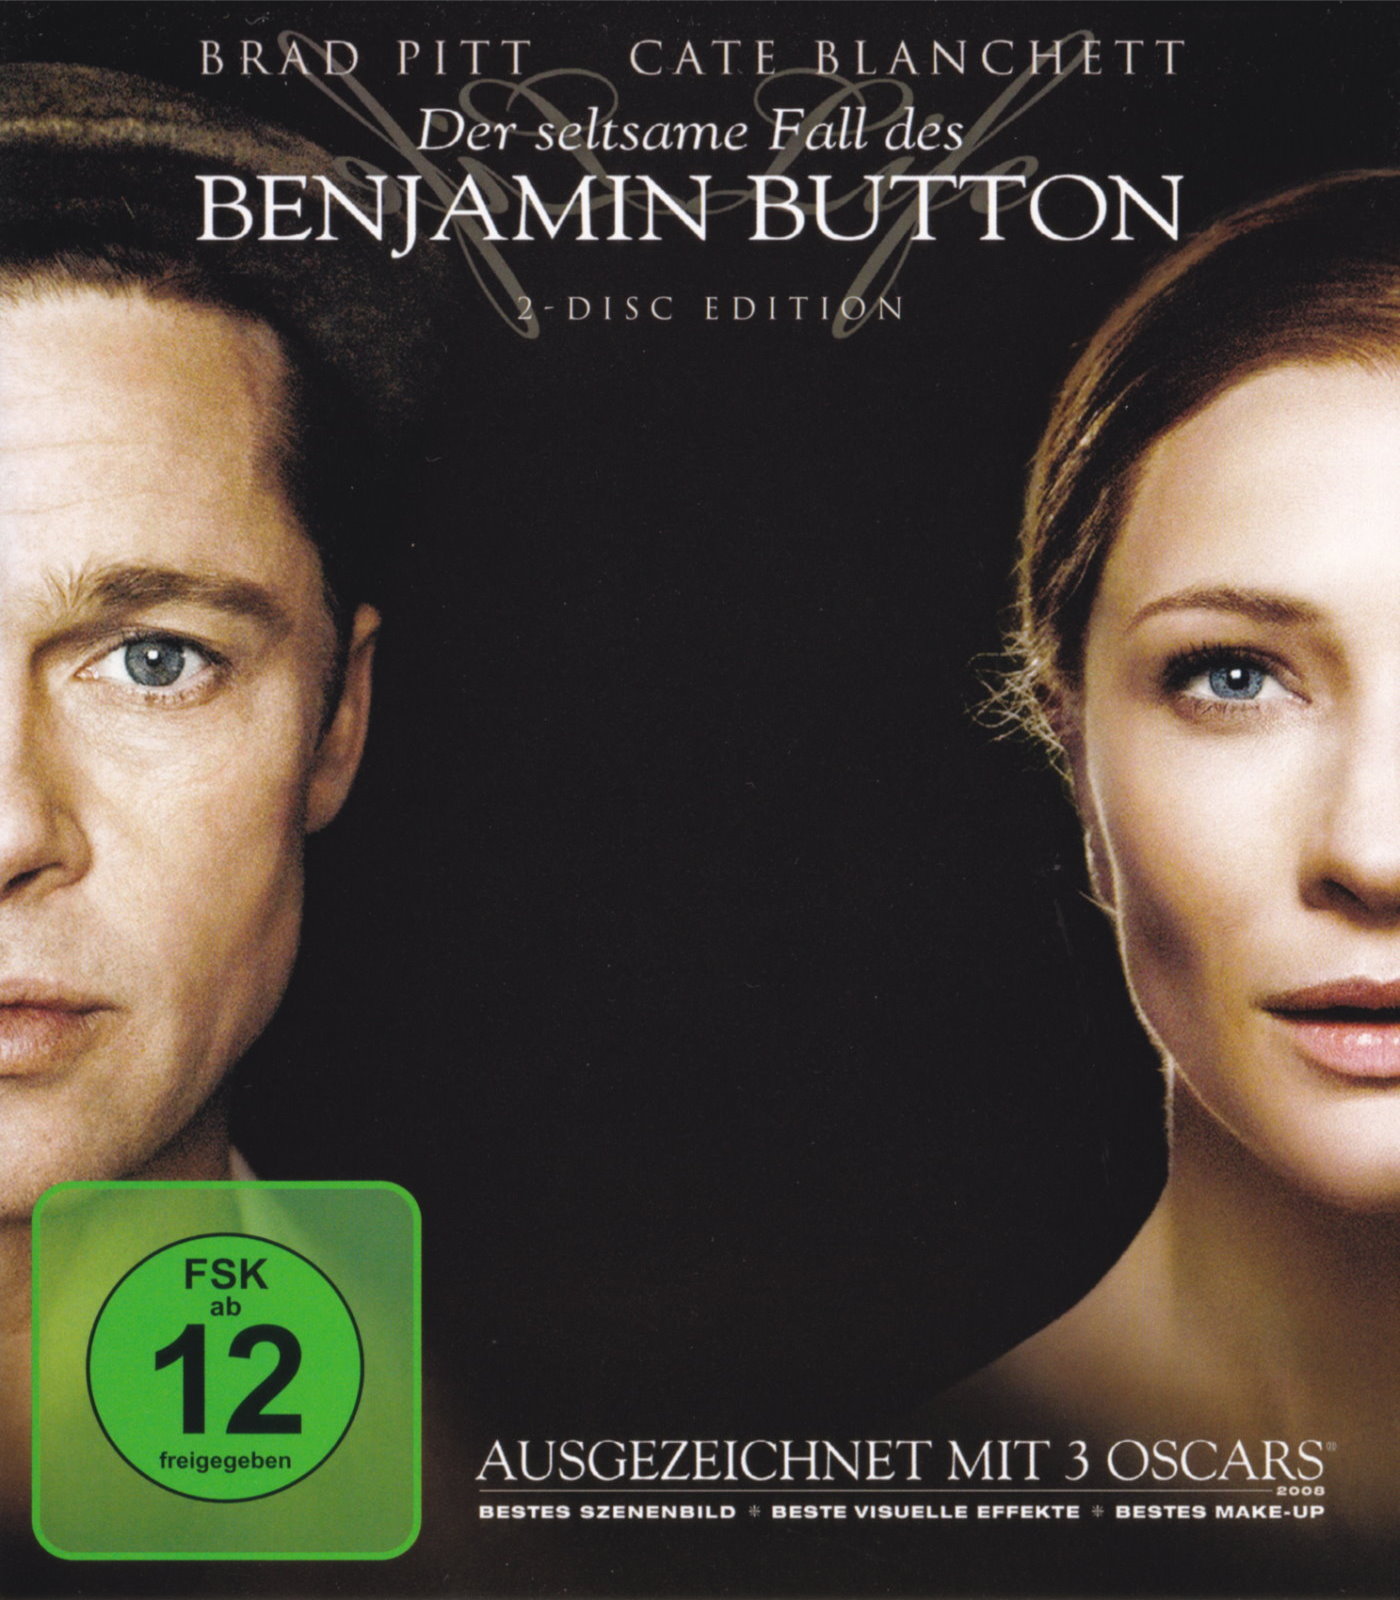 Cover - Der Seltsame Fall des Benjamin Button.jpg